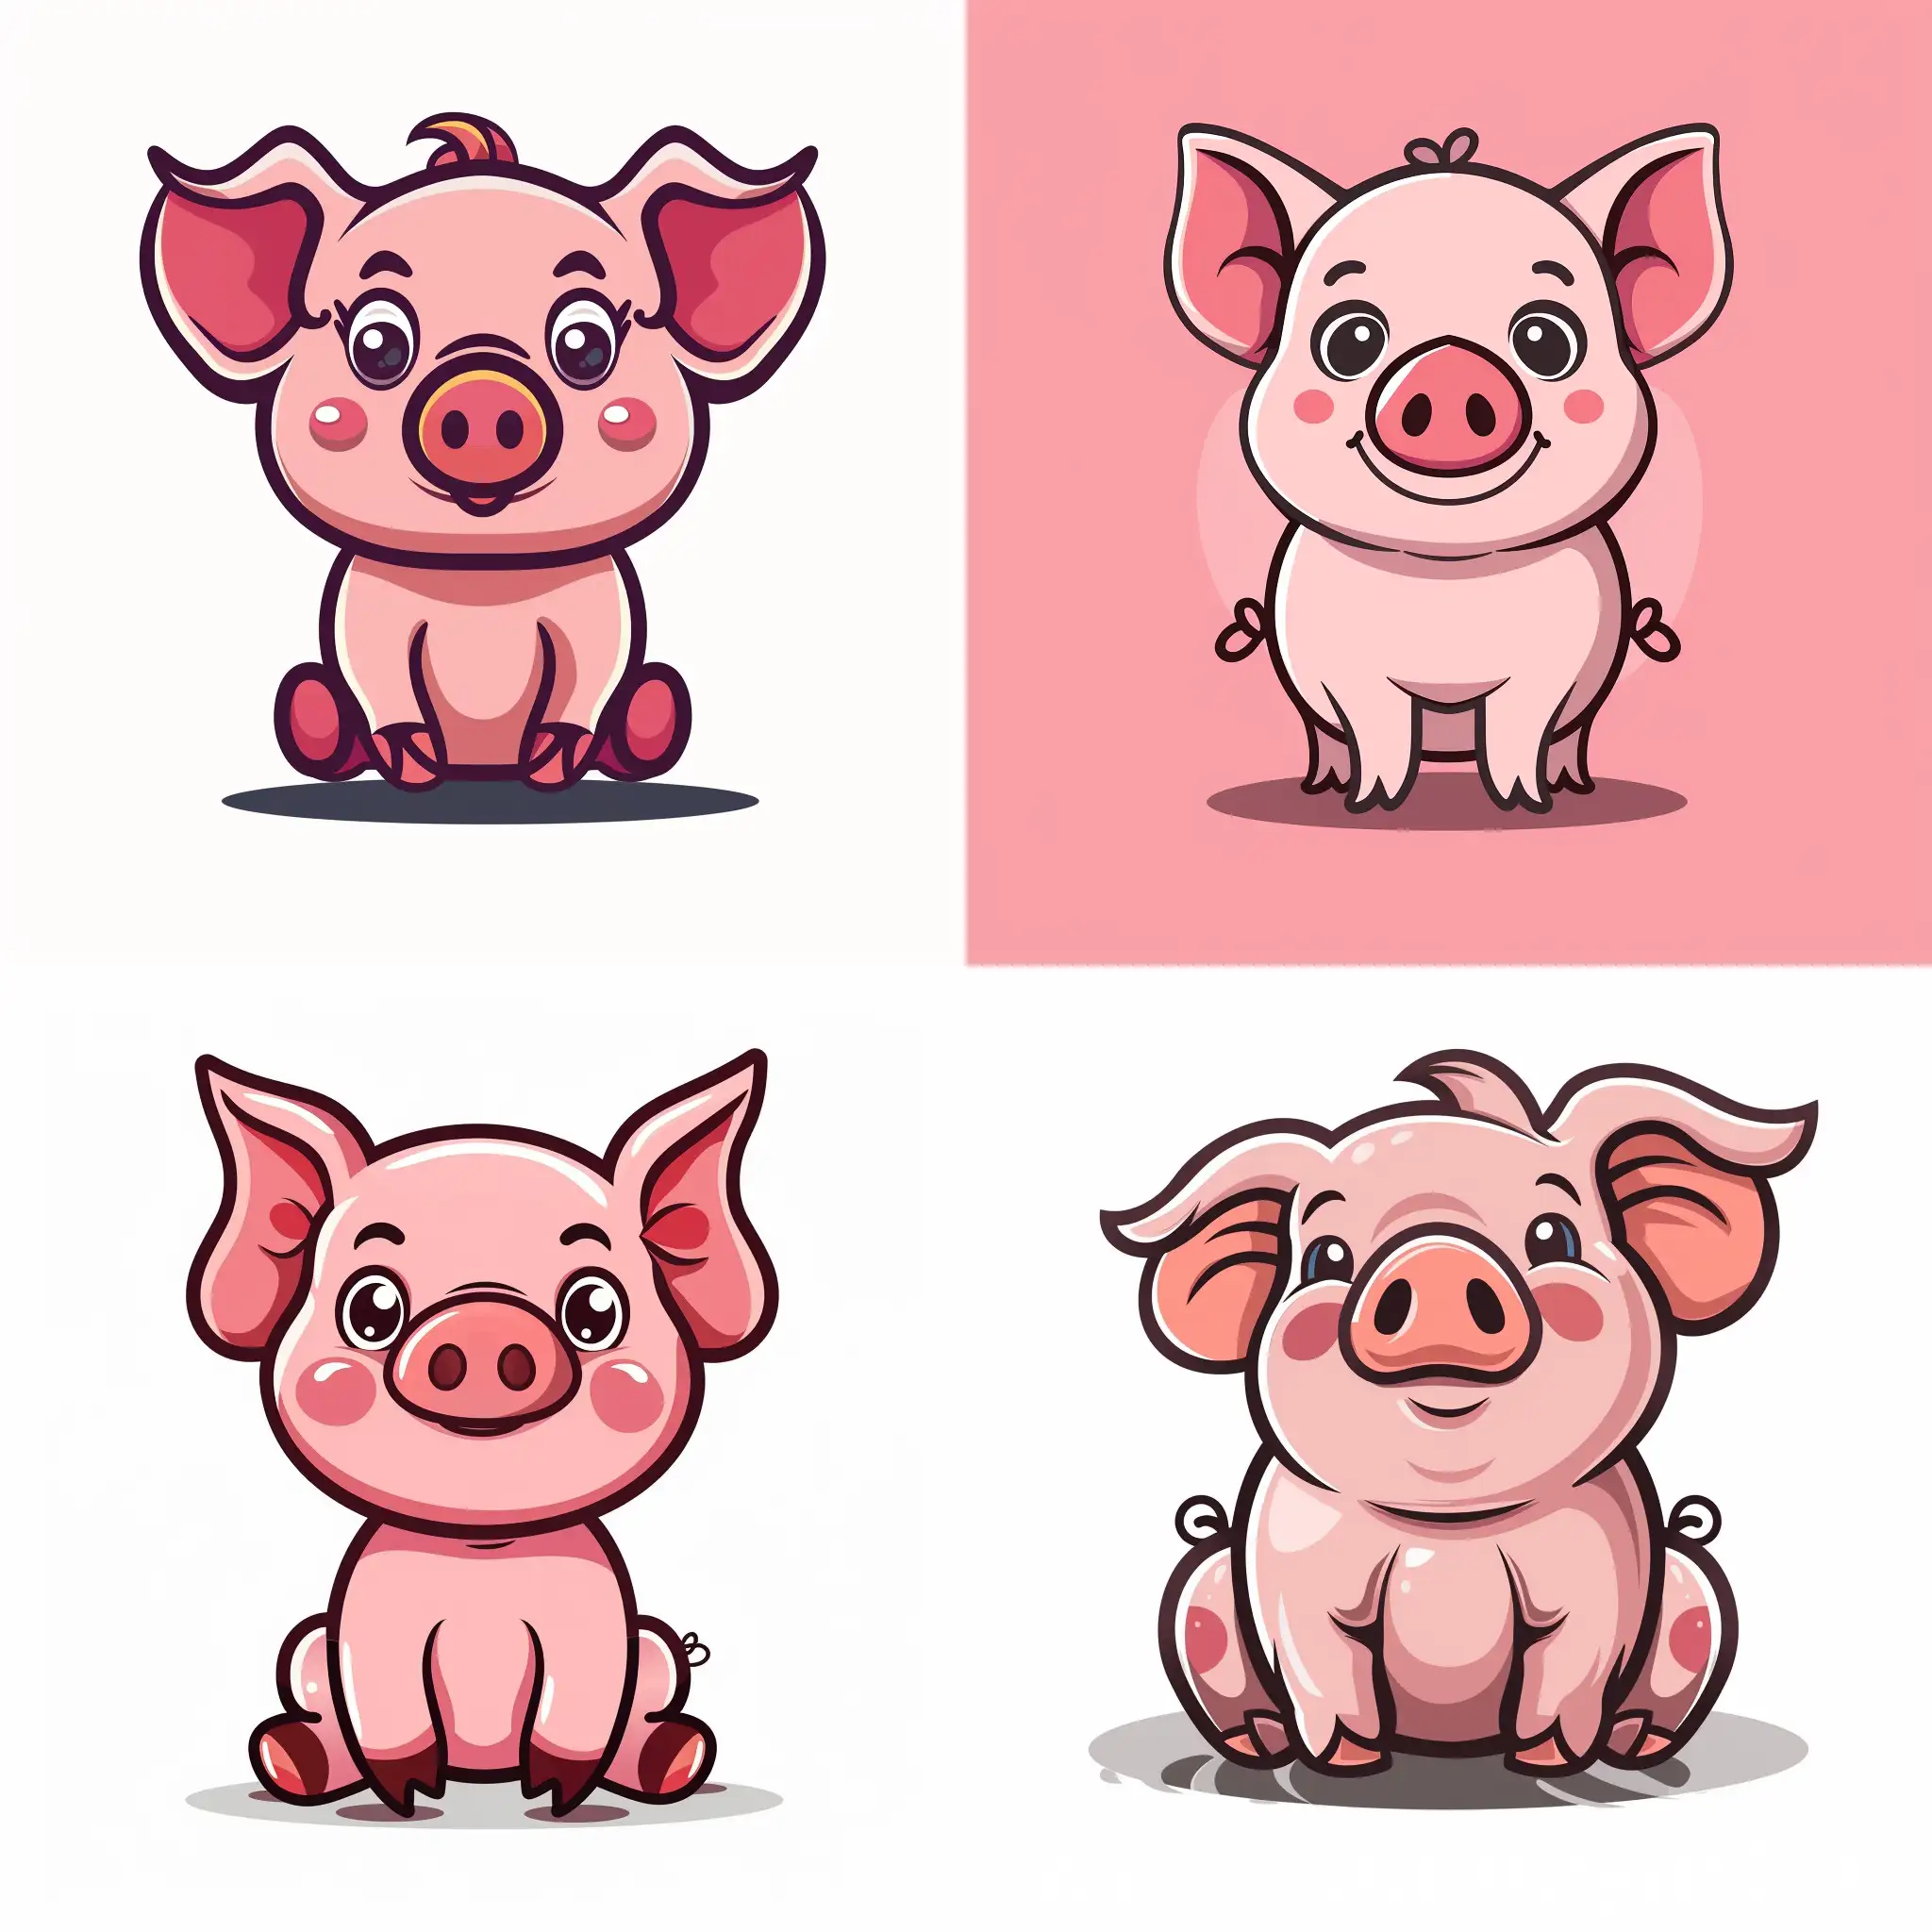 logo pig character cartoon cute